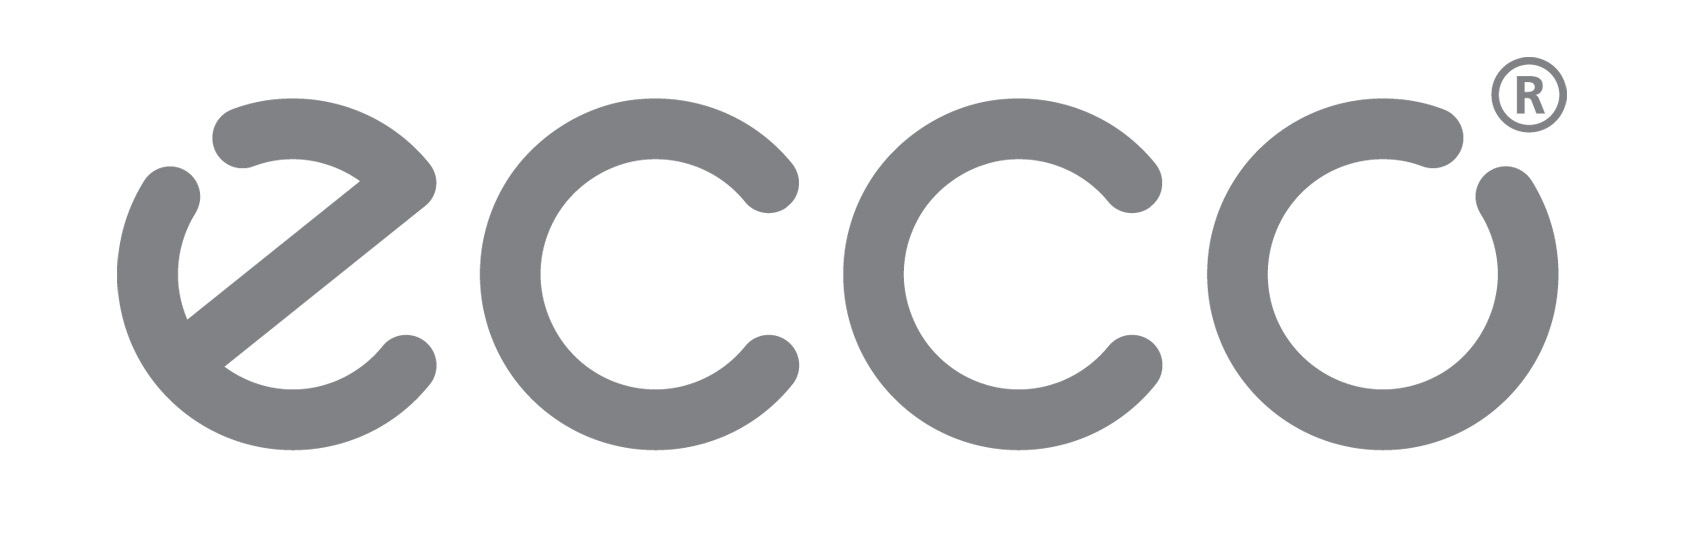 ECCO и «Спасибо от Сбербанка» — новое партнерство